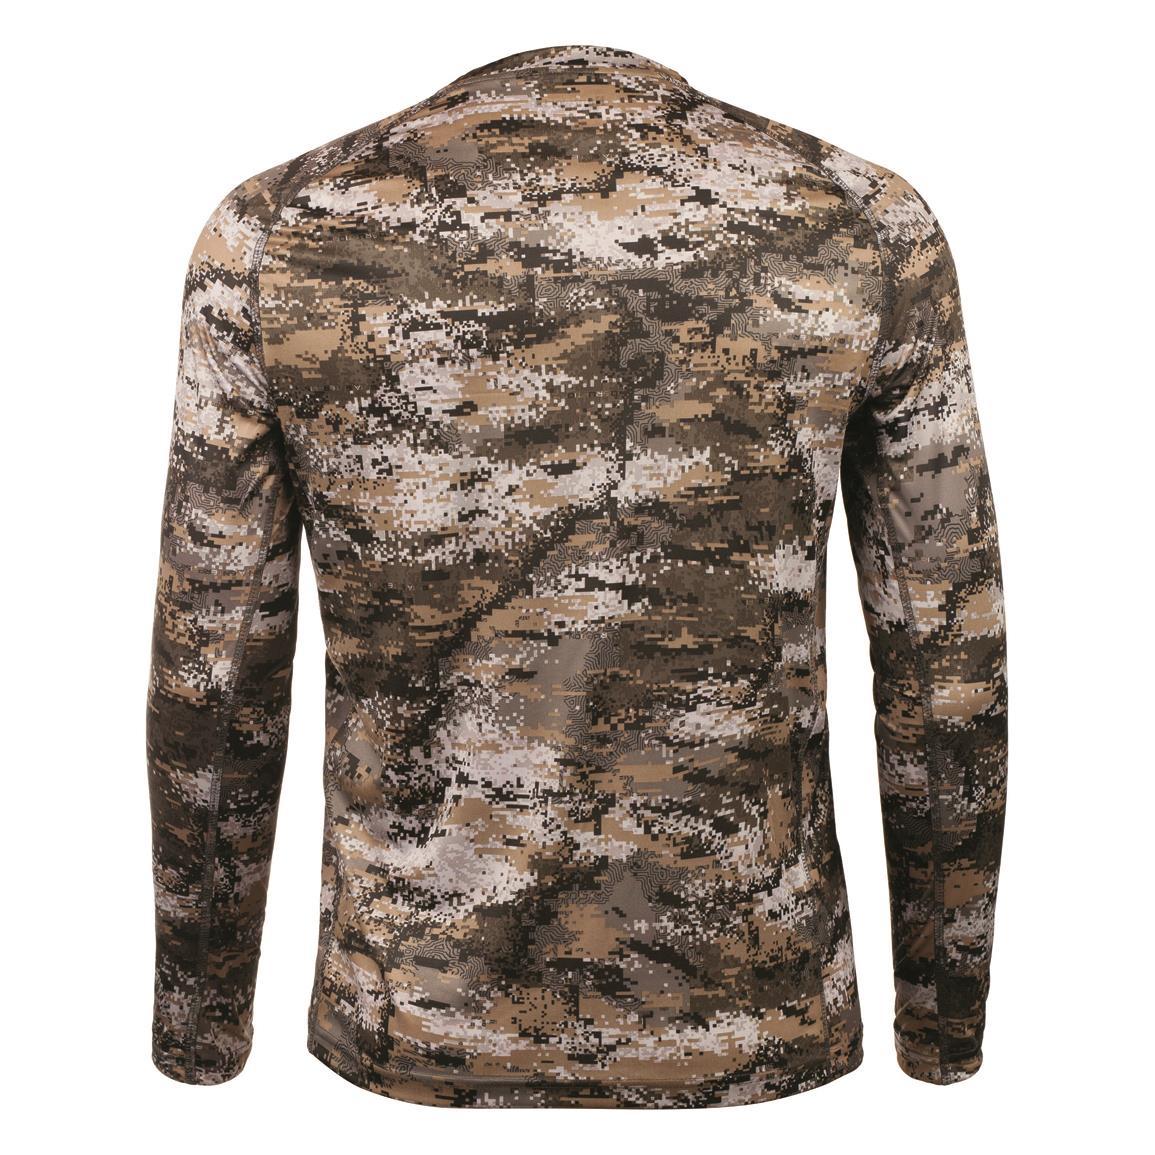 Browning Woven Upland Hunting Shirt - 723454, Camo & Shooting Shirts at ...